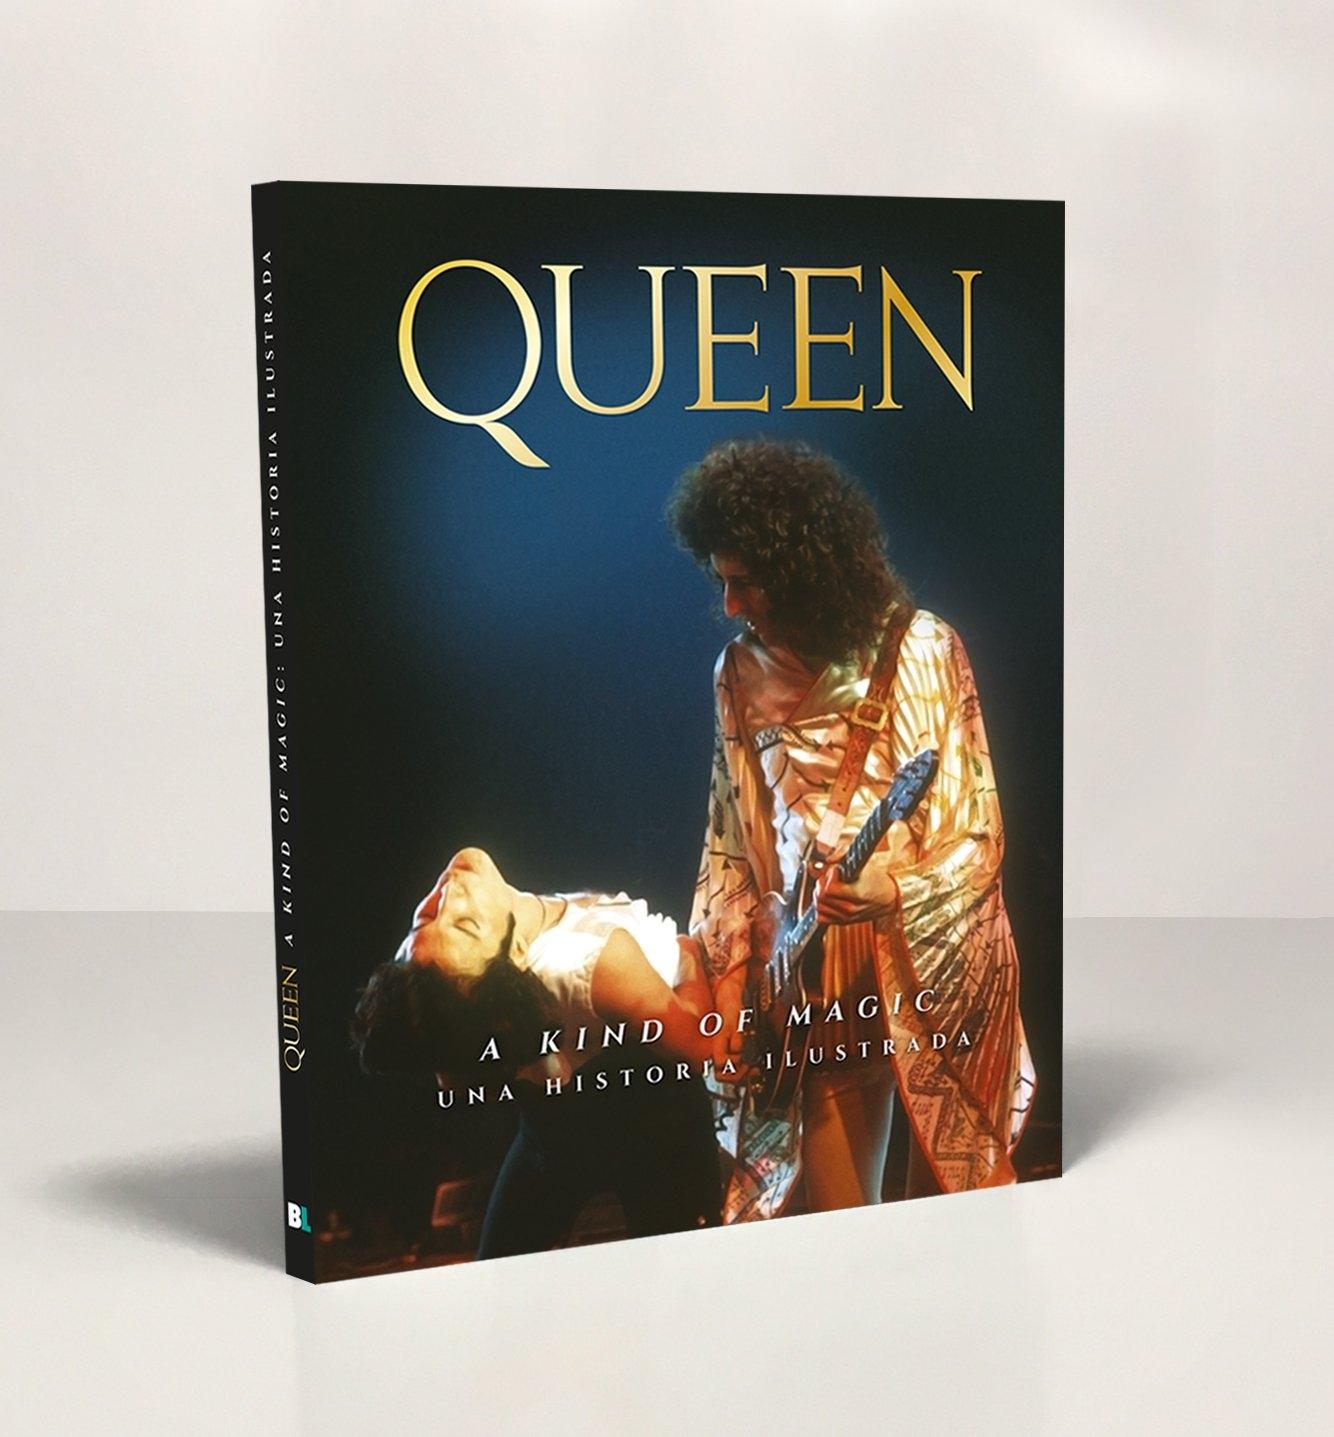 Queen "A kind of magic - Una historia ilustrada"